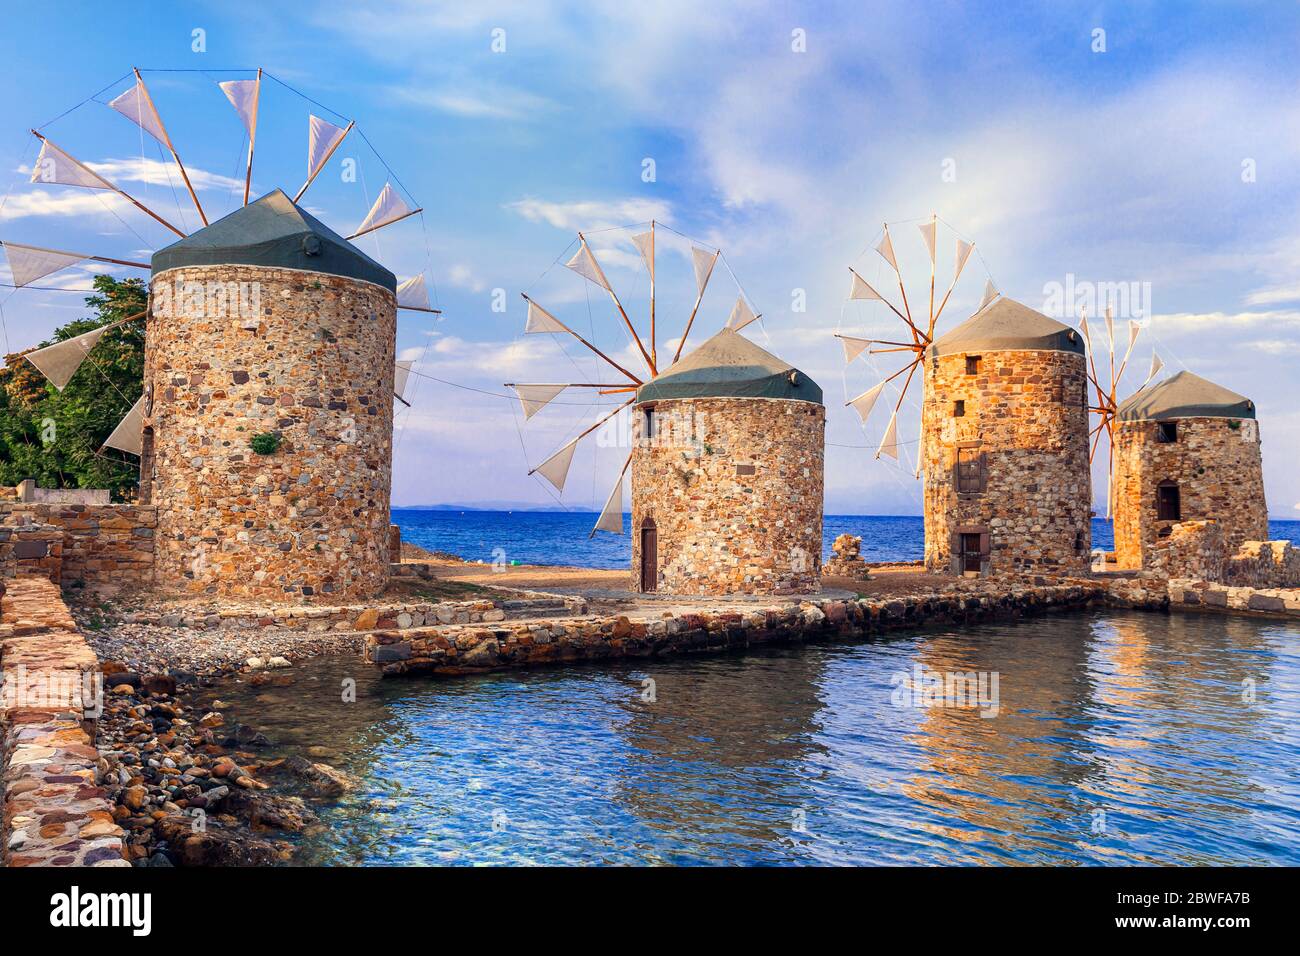 Authentique paysage traditionnel grec - anciens moulins à vent près de la mer - point de repère de l'île de Chios Banque D'Images